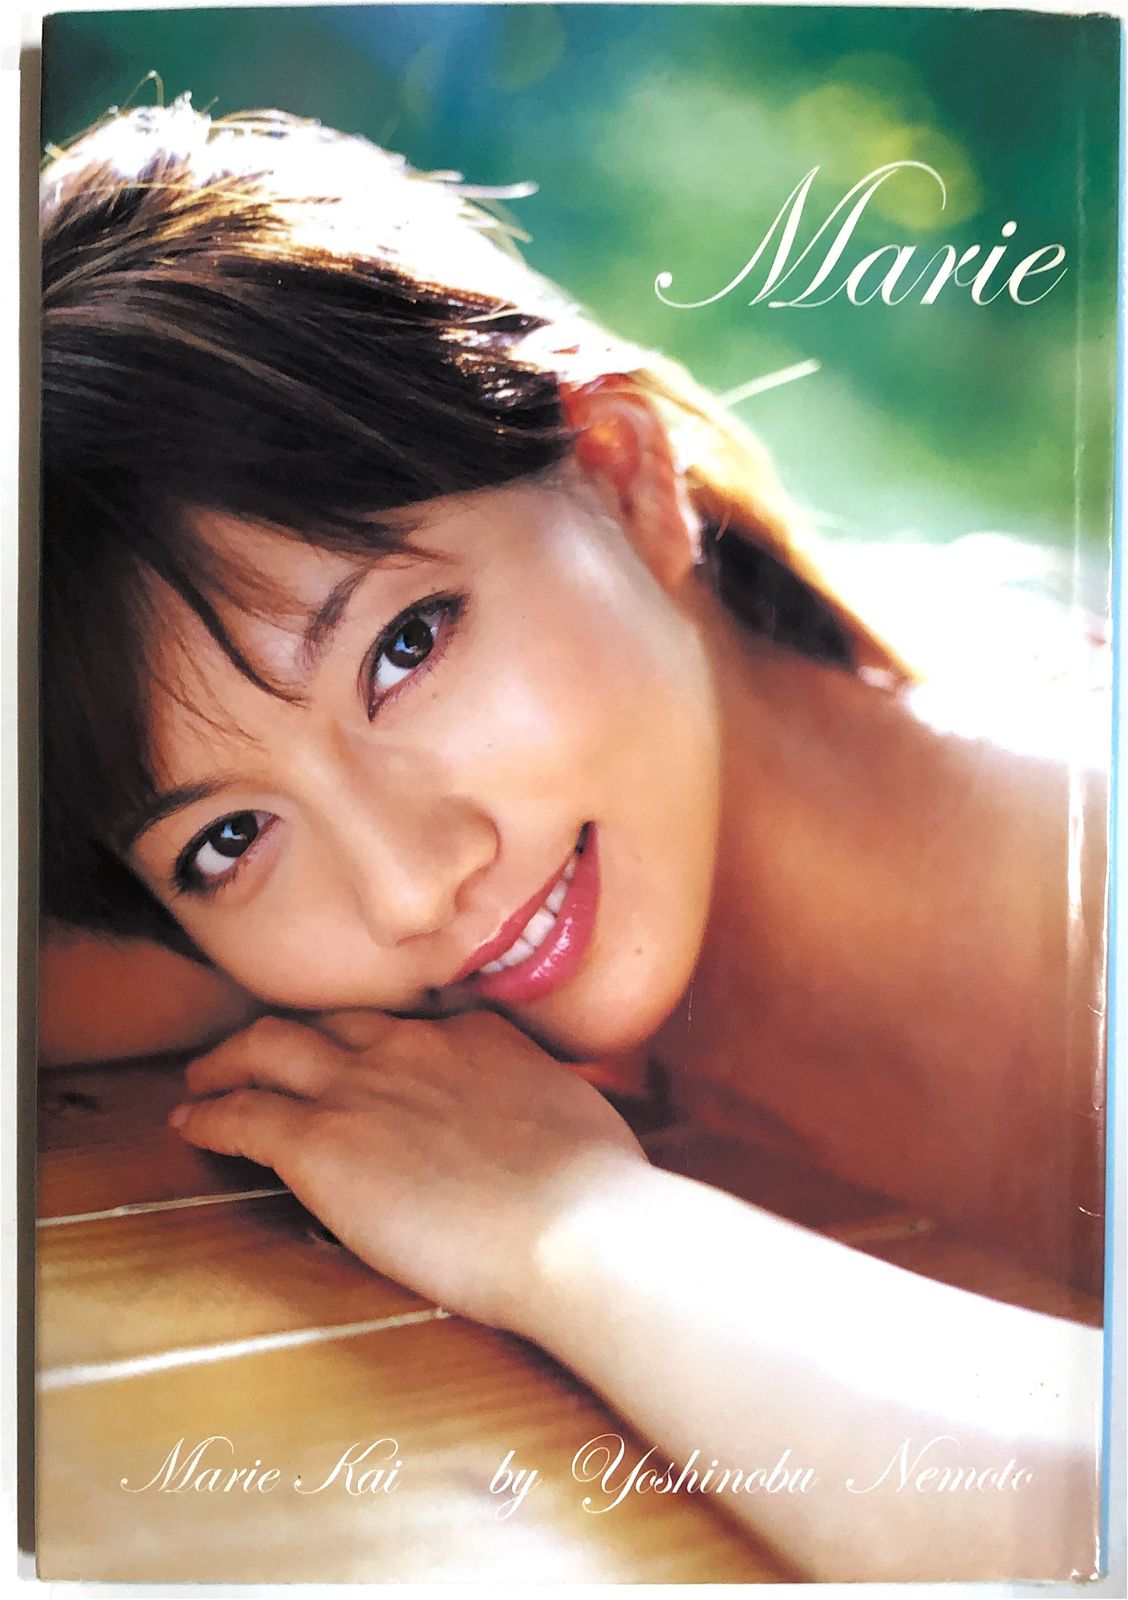 甲斐まり恵フォトブック「marie」(DVD付) (ワニブックス) 20230831-1 - メルカリ